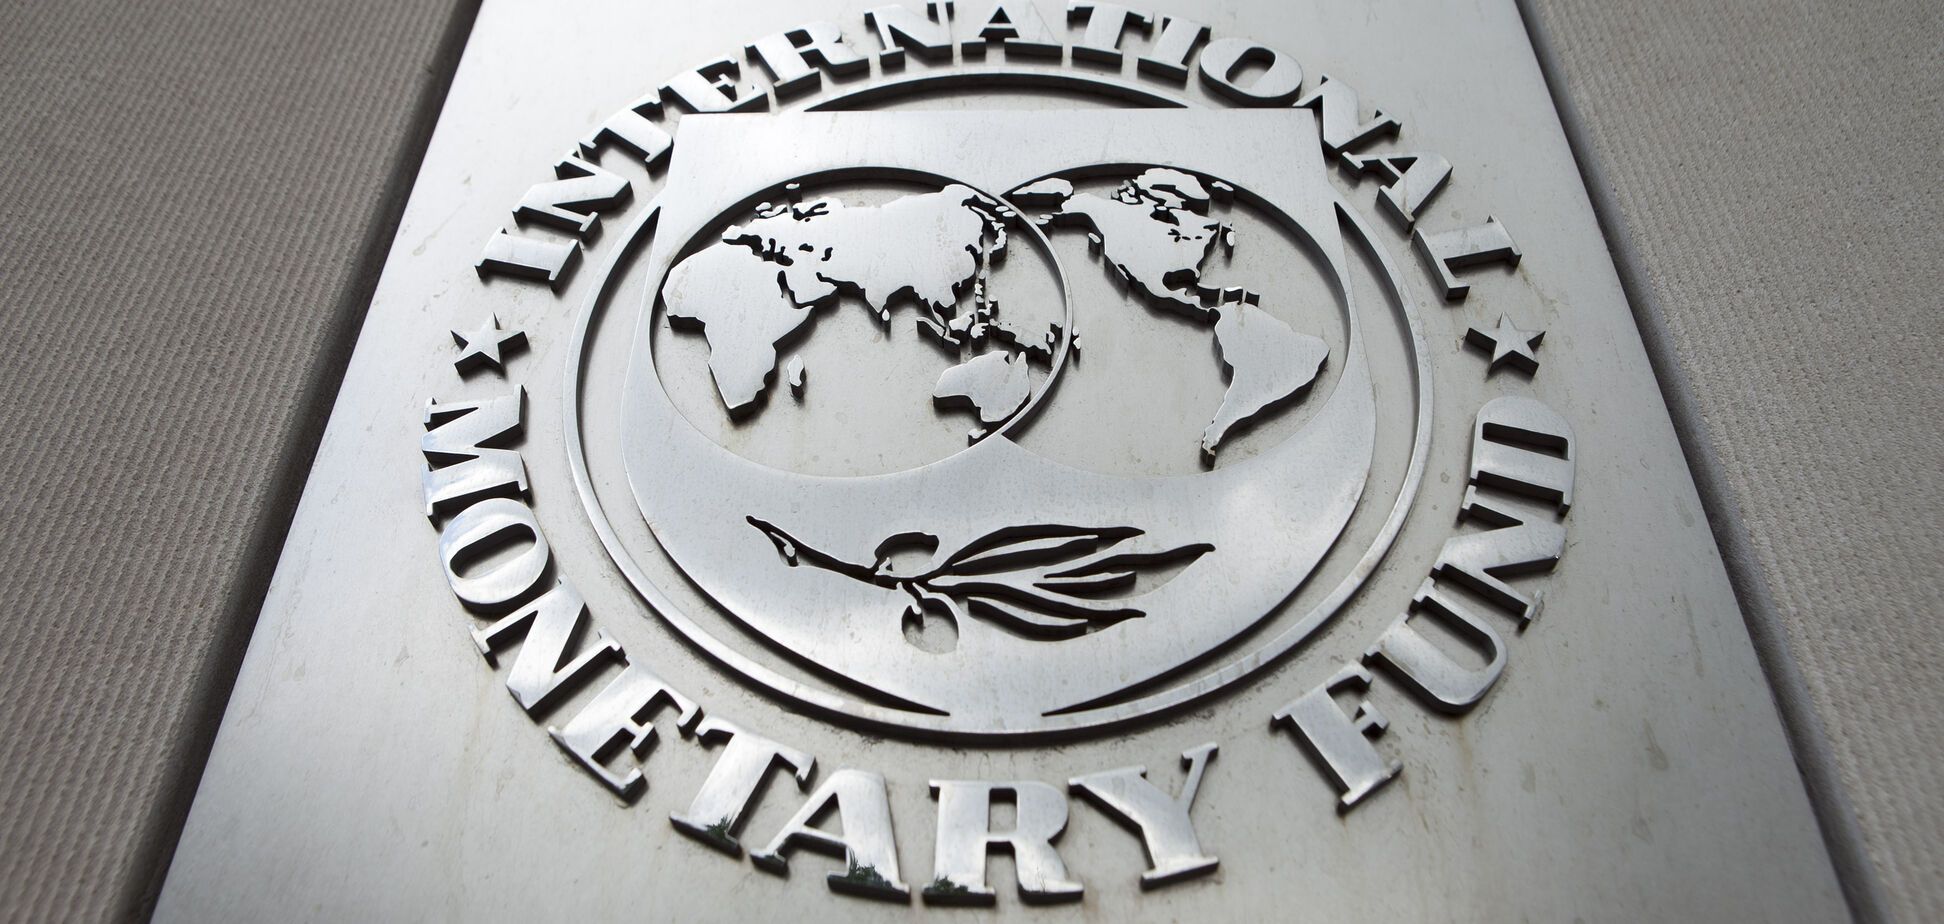 Реформы нужны не МВФ: в Украине объяснили суть требований фонда